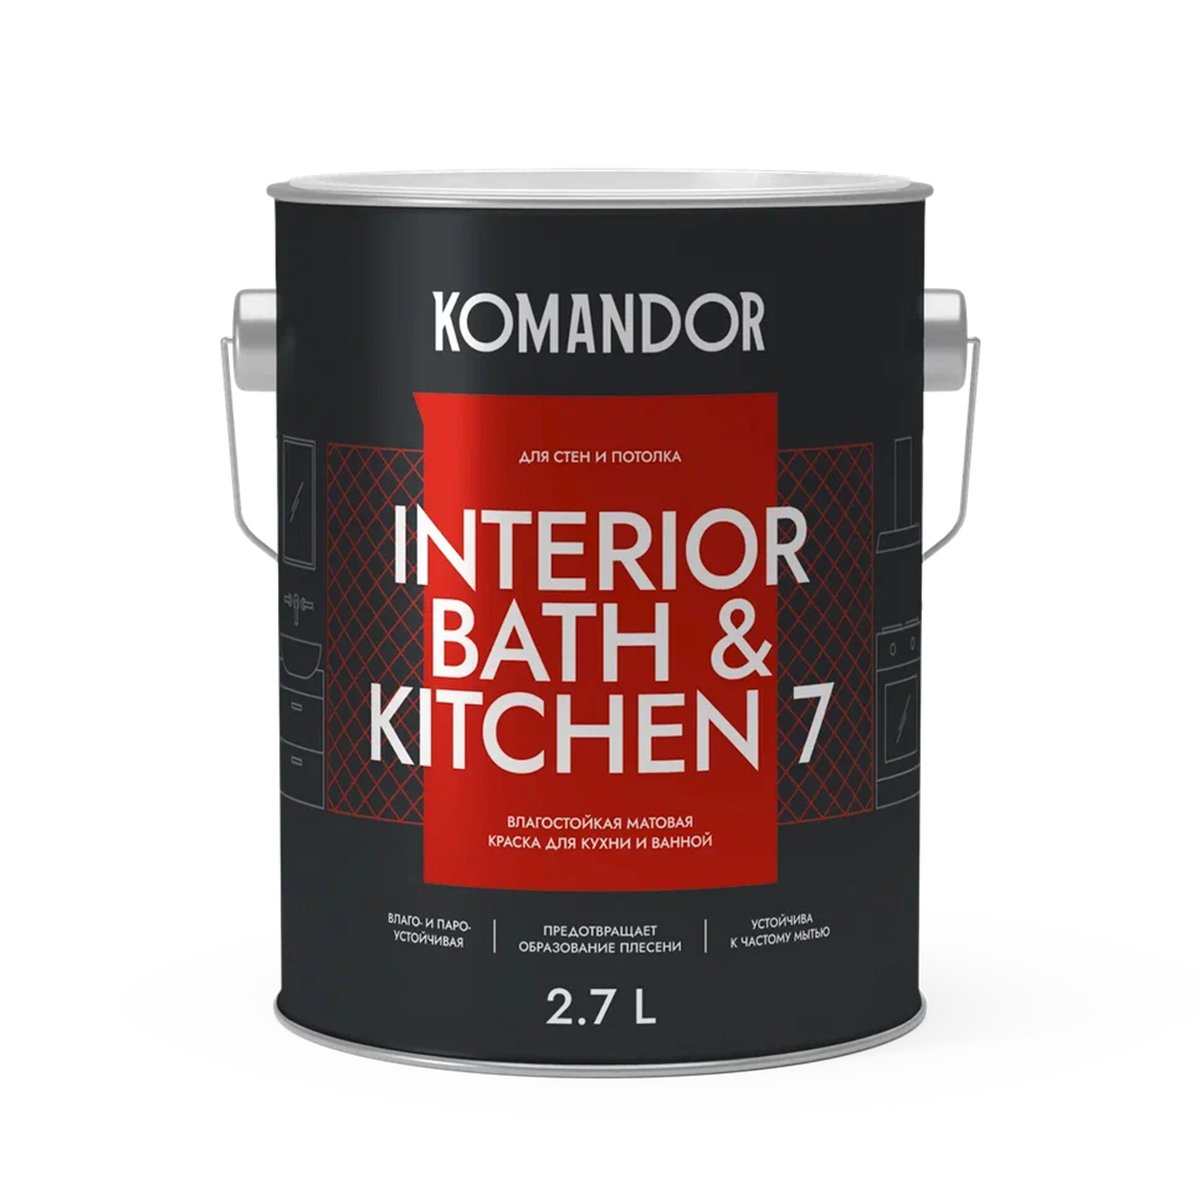 Краска интерьерная влагостойкая Komandor Interior Bath&Kitchen 7 мат. база С бесцв.,2,7